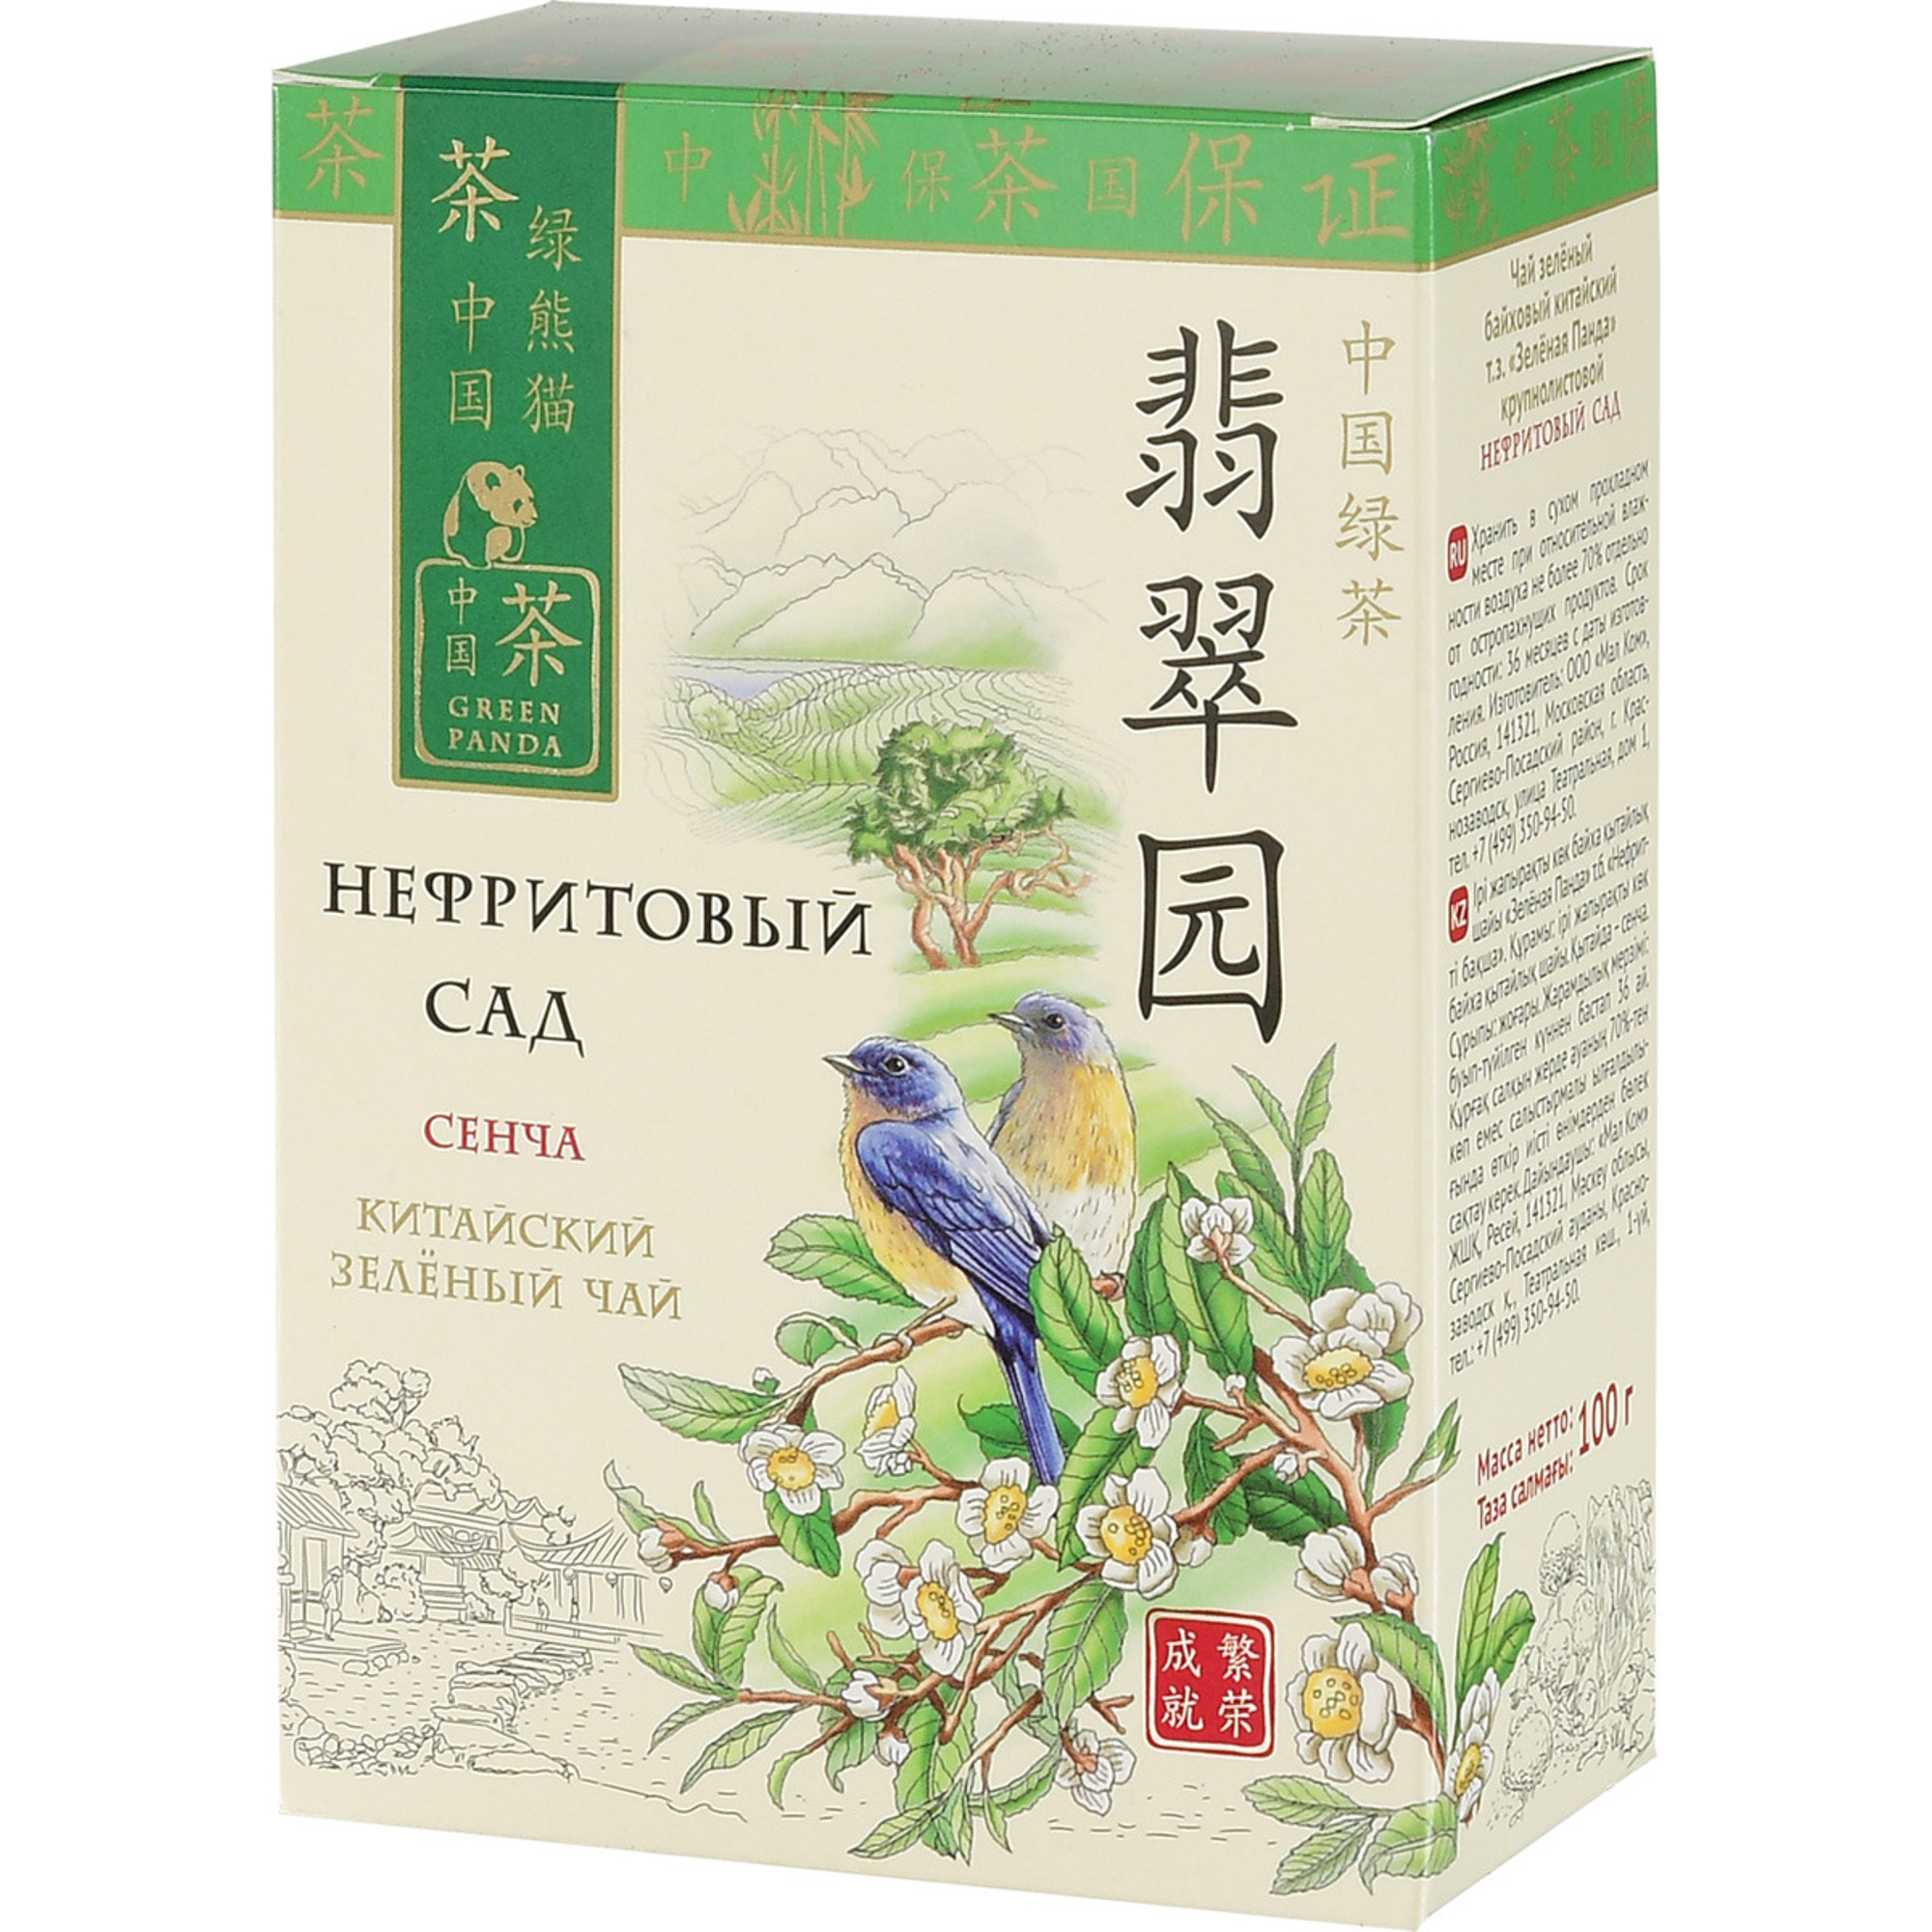 Чай зеленый Зеленая Панда Нефритовый сад Сенча листовой 100 г чай китайский листовой биошань 80 г